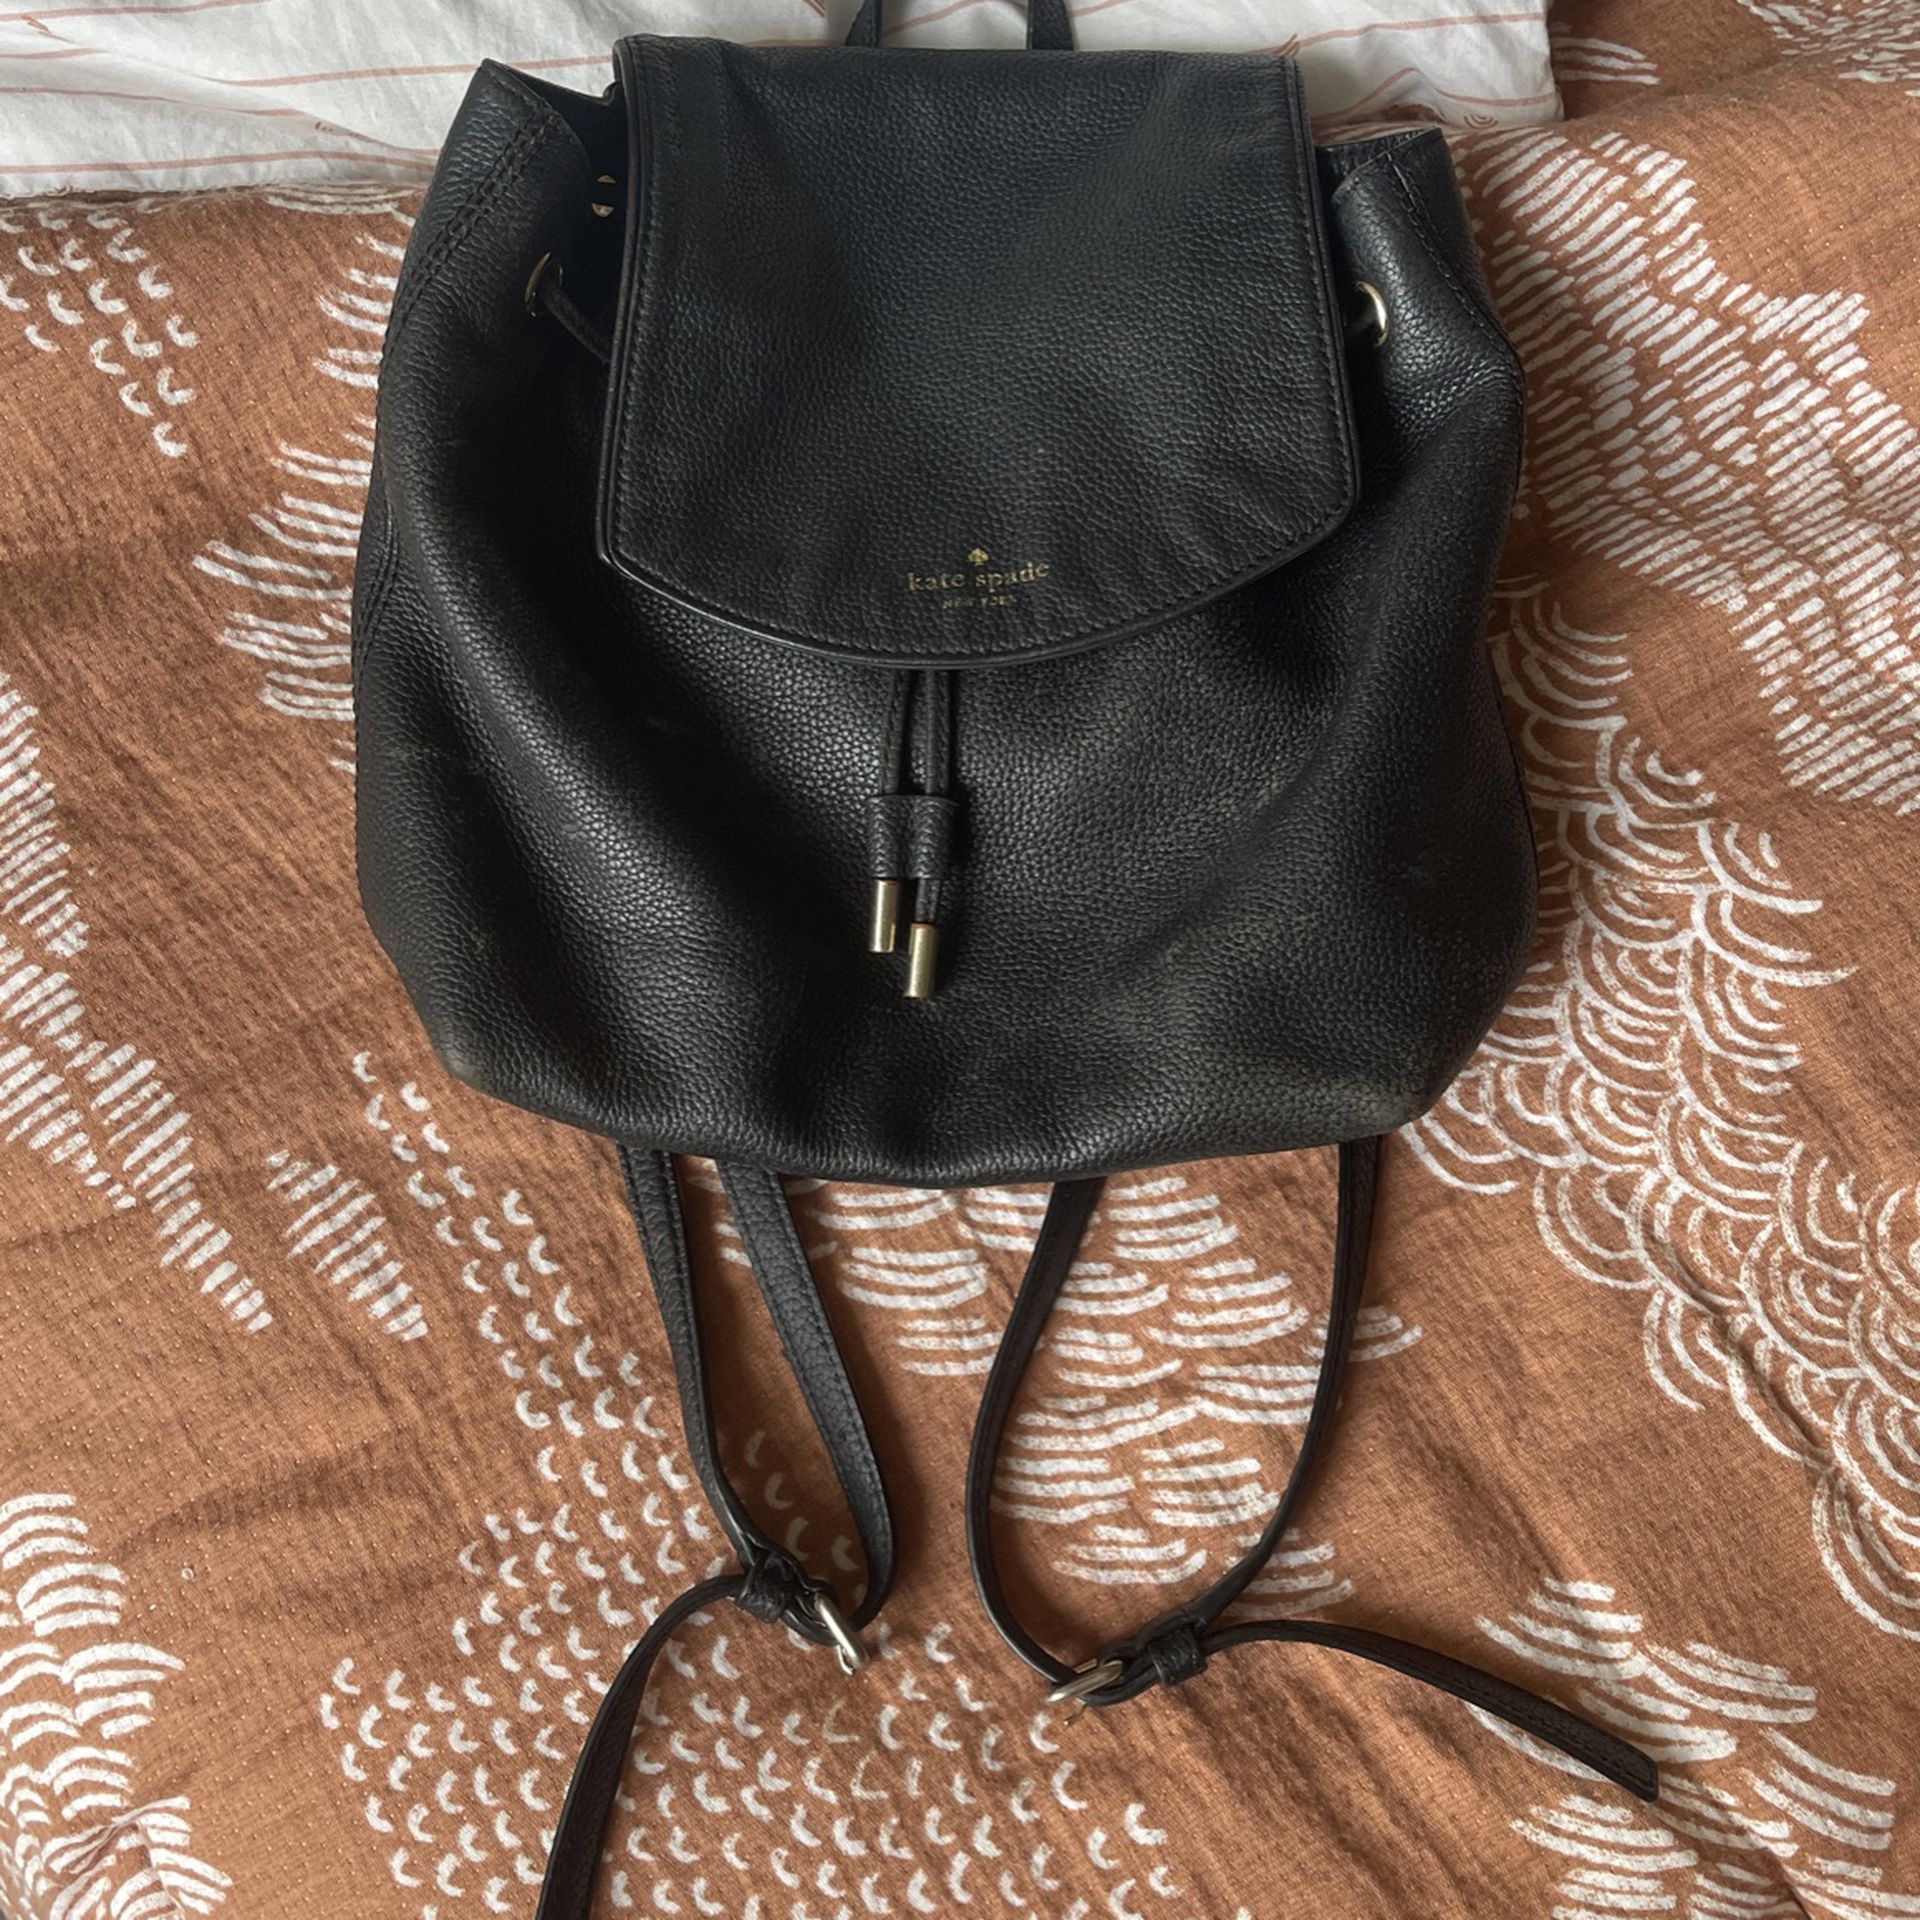 Black Kate Soade Leather Drawstring Backpack 